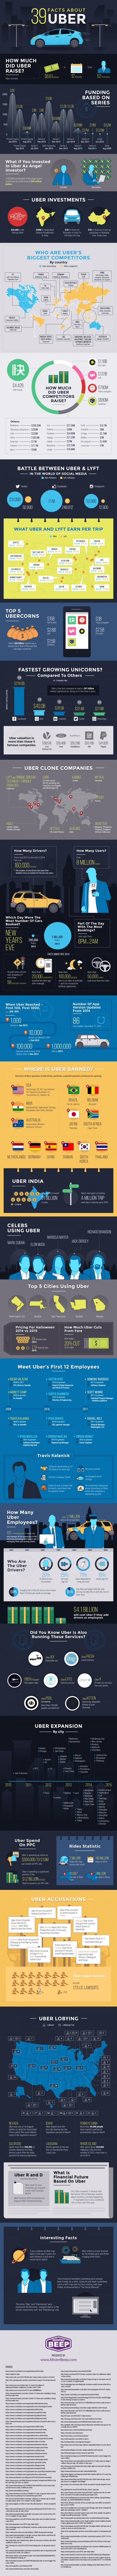 39 zanimljivih činjenica o Uberu Screenshot/Make Use Of